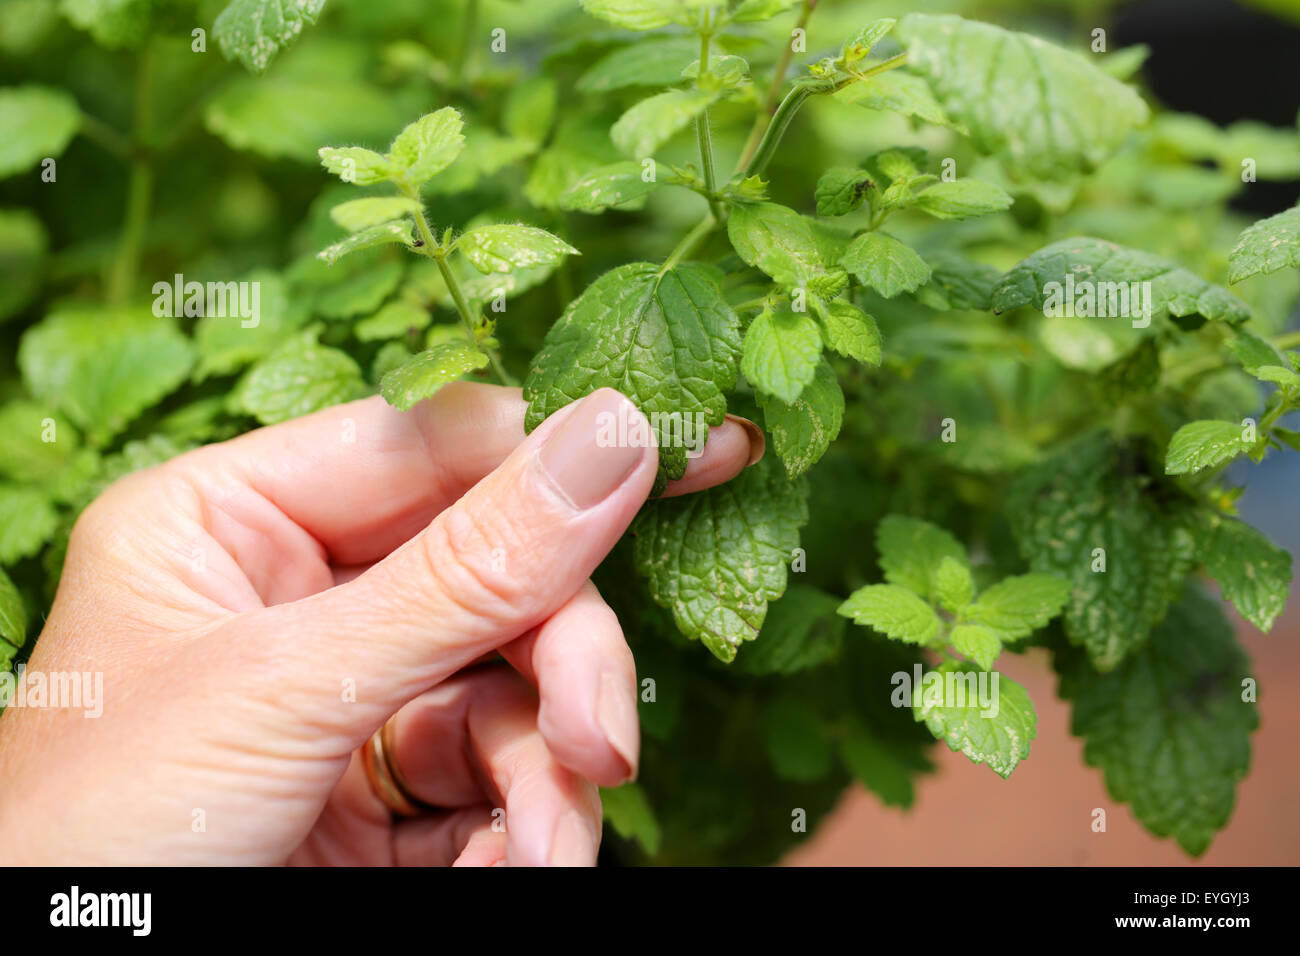 Eine Frau Reiben der Blätter der Zitronenmelisse grasartige Pflanze zwischen zwei Fingern der Duft der zerdrückten Pflanzen Blätter zu lösen Stockfoto